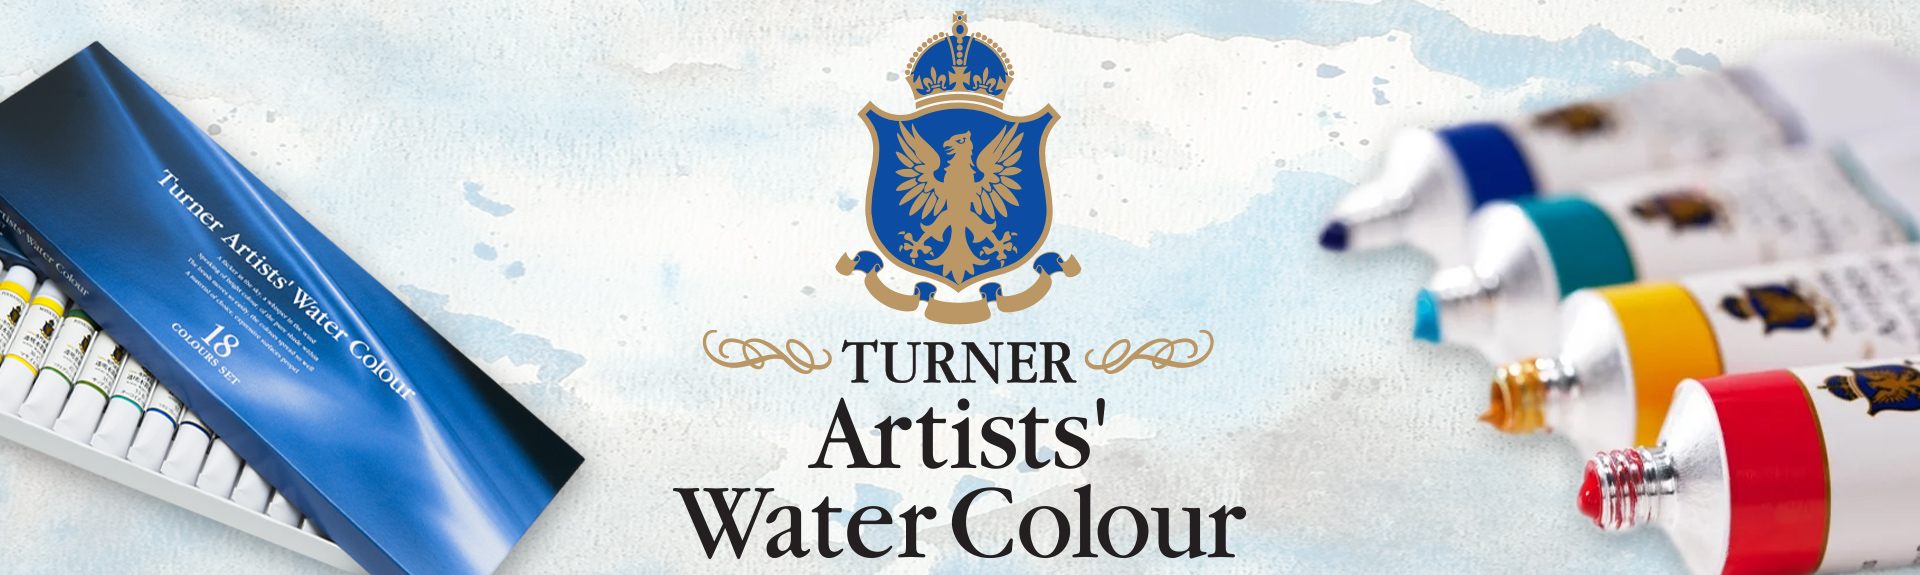 Turner watercolors